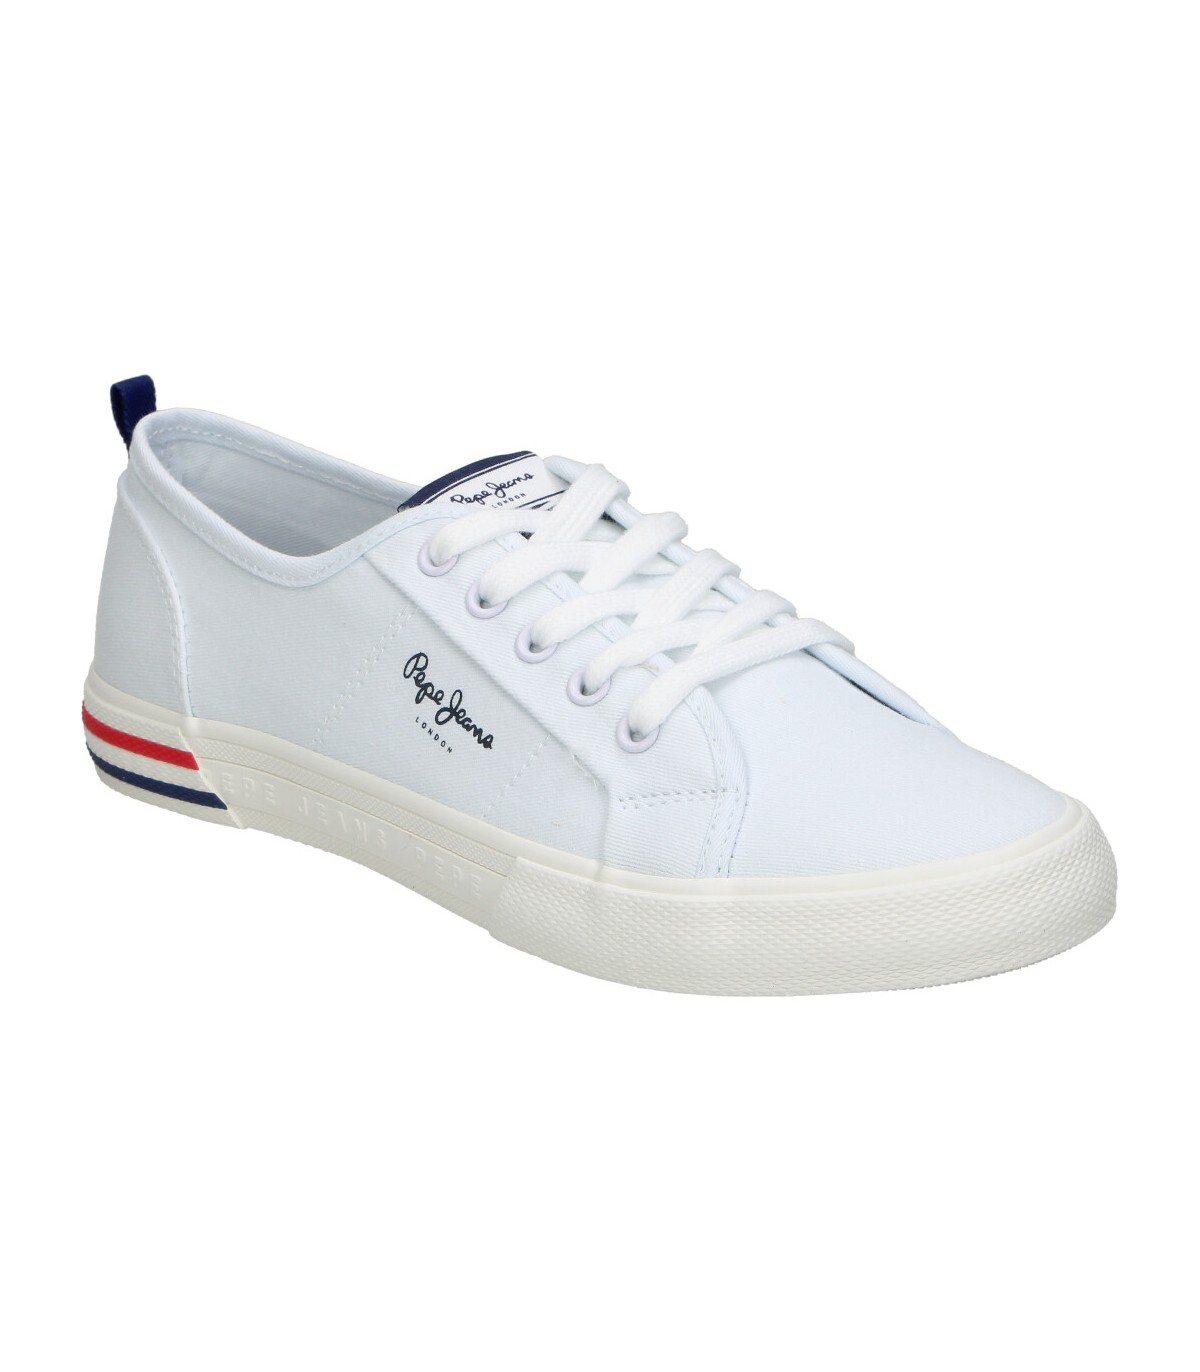 Zapatillas de niño PEPE JEANS pgs30561-803 color blanco